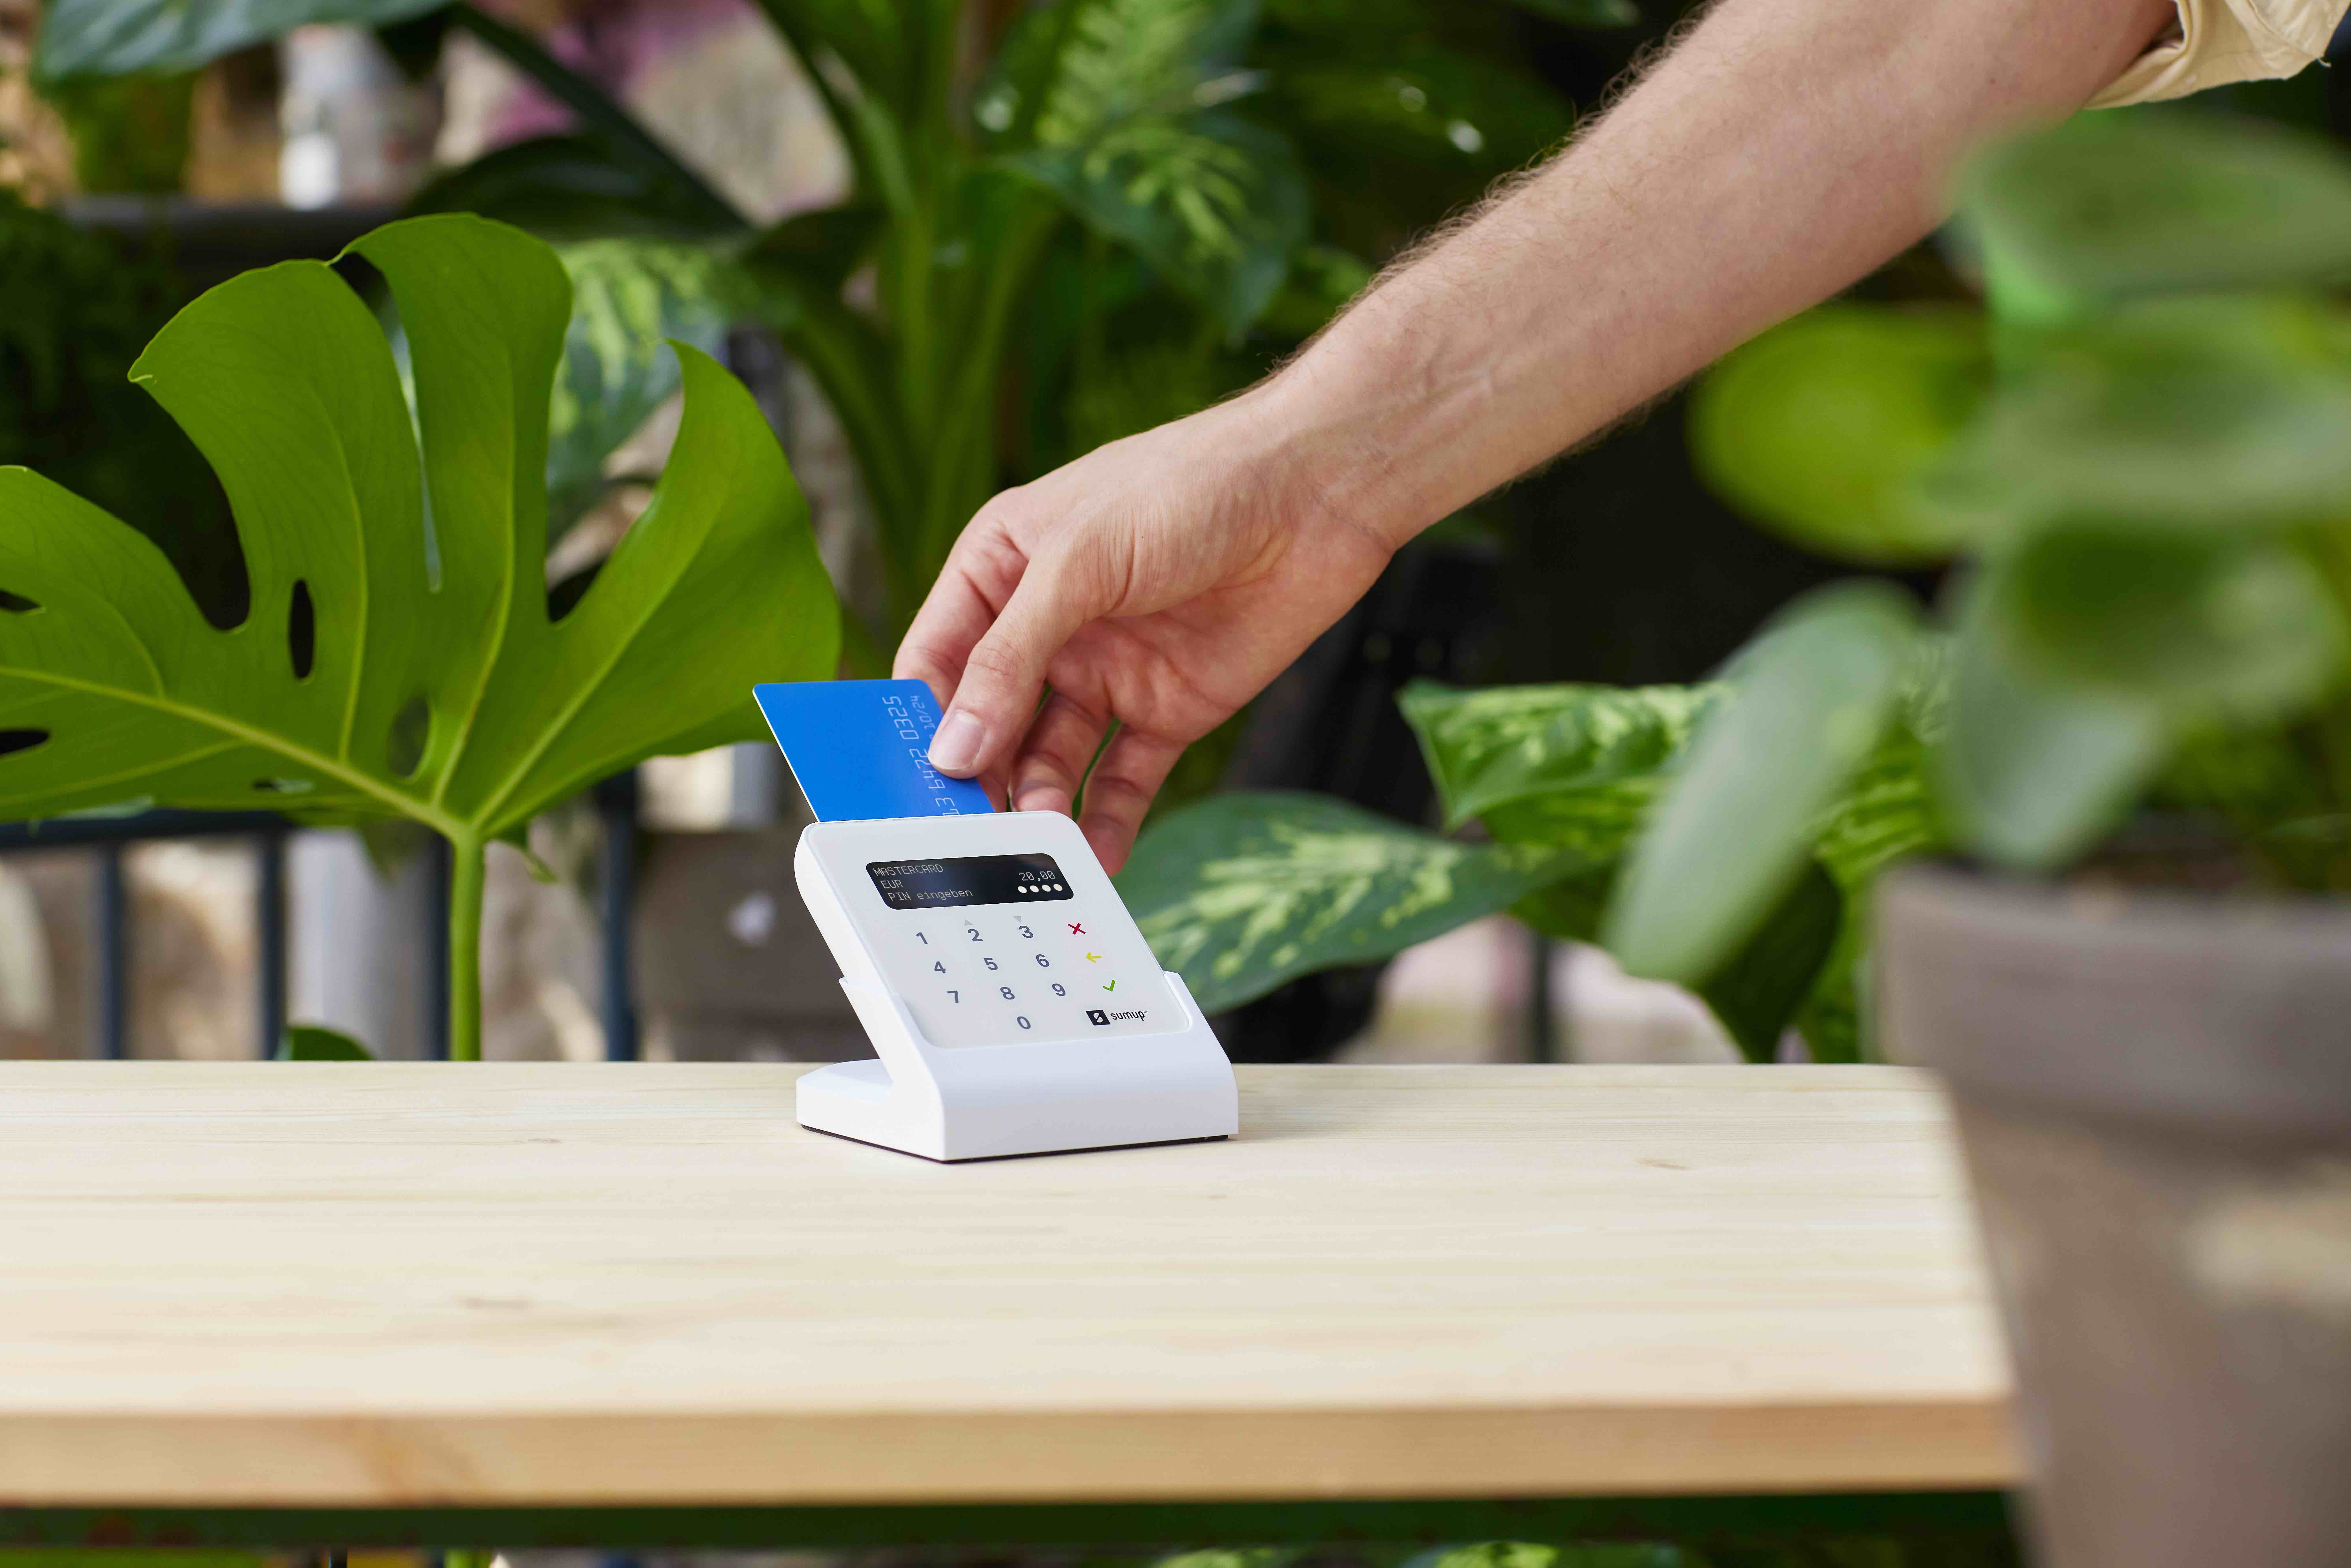 Kunde schiebt seine Bankkarte in das SumUp Air Kartenlesegerät ein, um seinen Einkauf im Blumenladen bargeldlos zu bezahlen